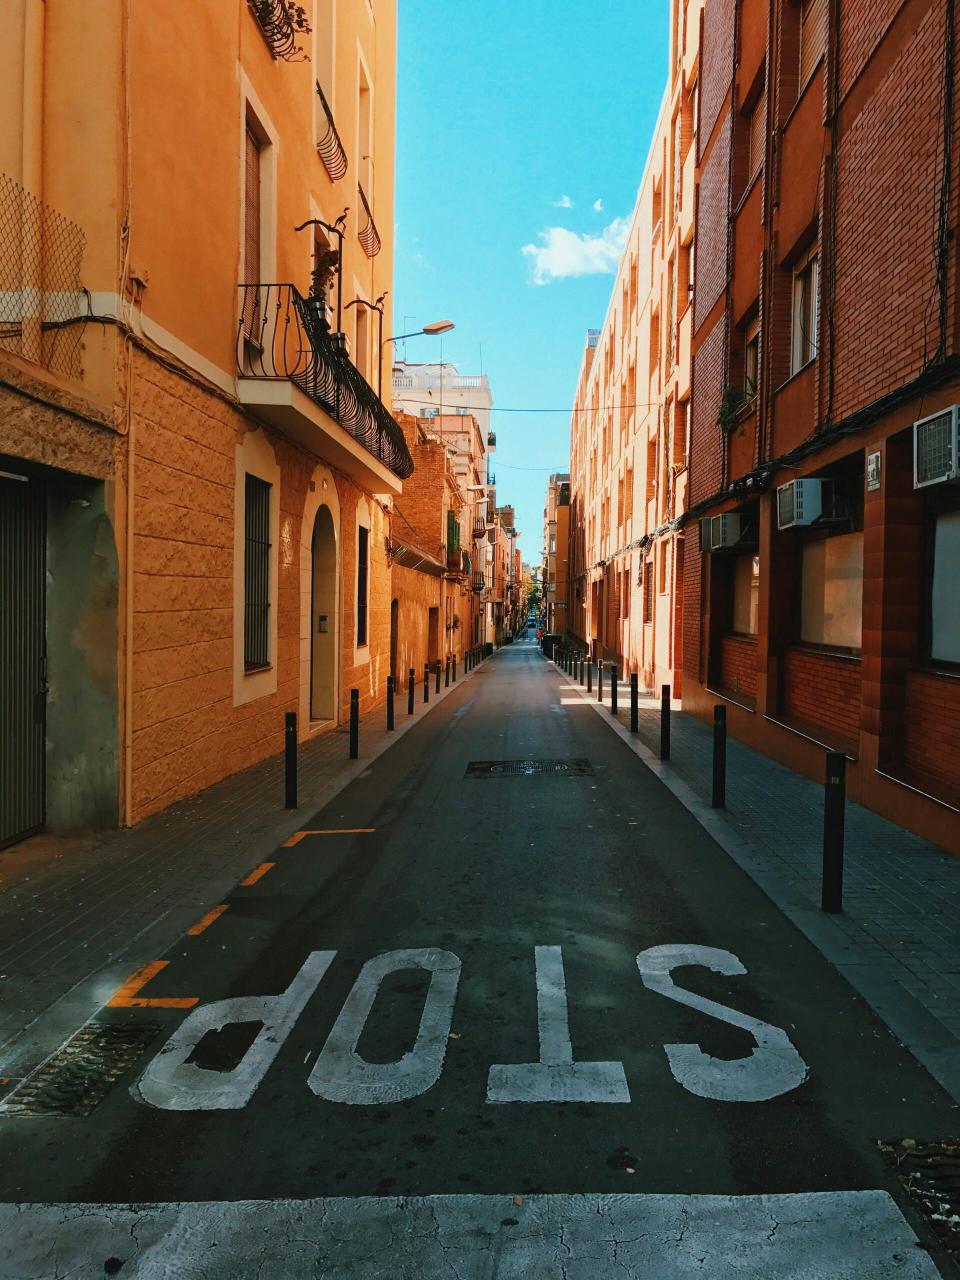 Bürgermeister Jaume Collboni kündigte an, dass alle derzeit legal an Touristen vermieteten Wohnungen ab 2029 ausschließlich den Bewohnern der Stadt zur Verfügung stehen sollen. - Copyright: Oleg Prachuk/Pexels